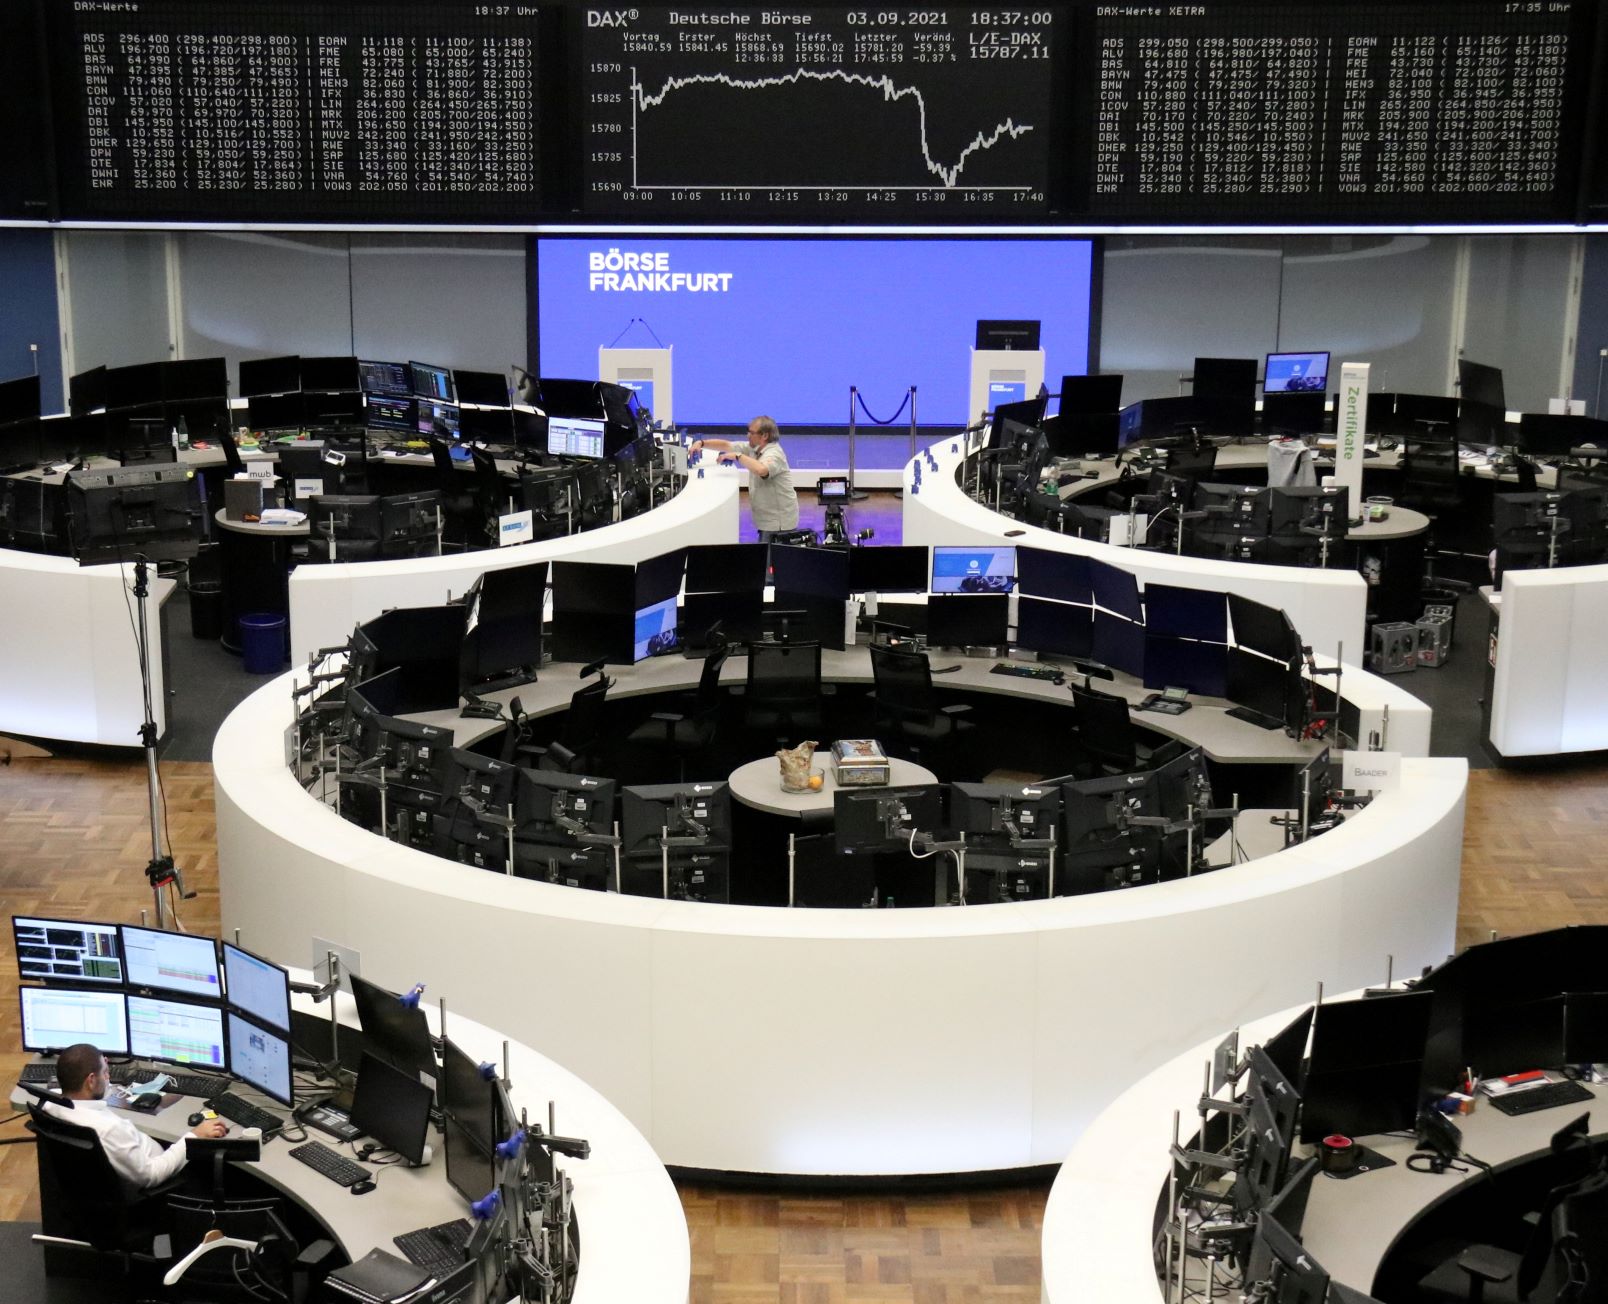 L'indice Dax de la Bourse de Francfort se fait un lifting à 330 milliards d'euros